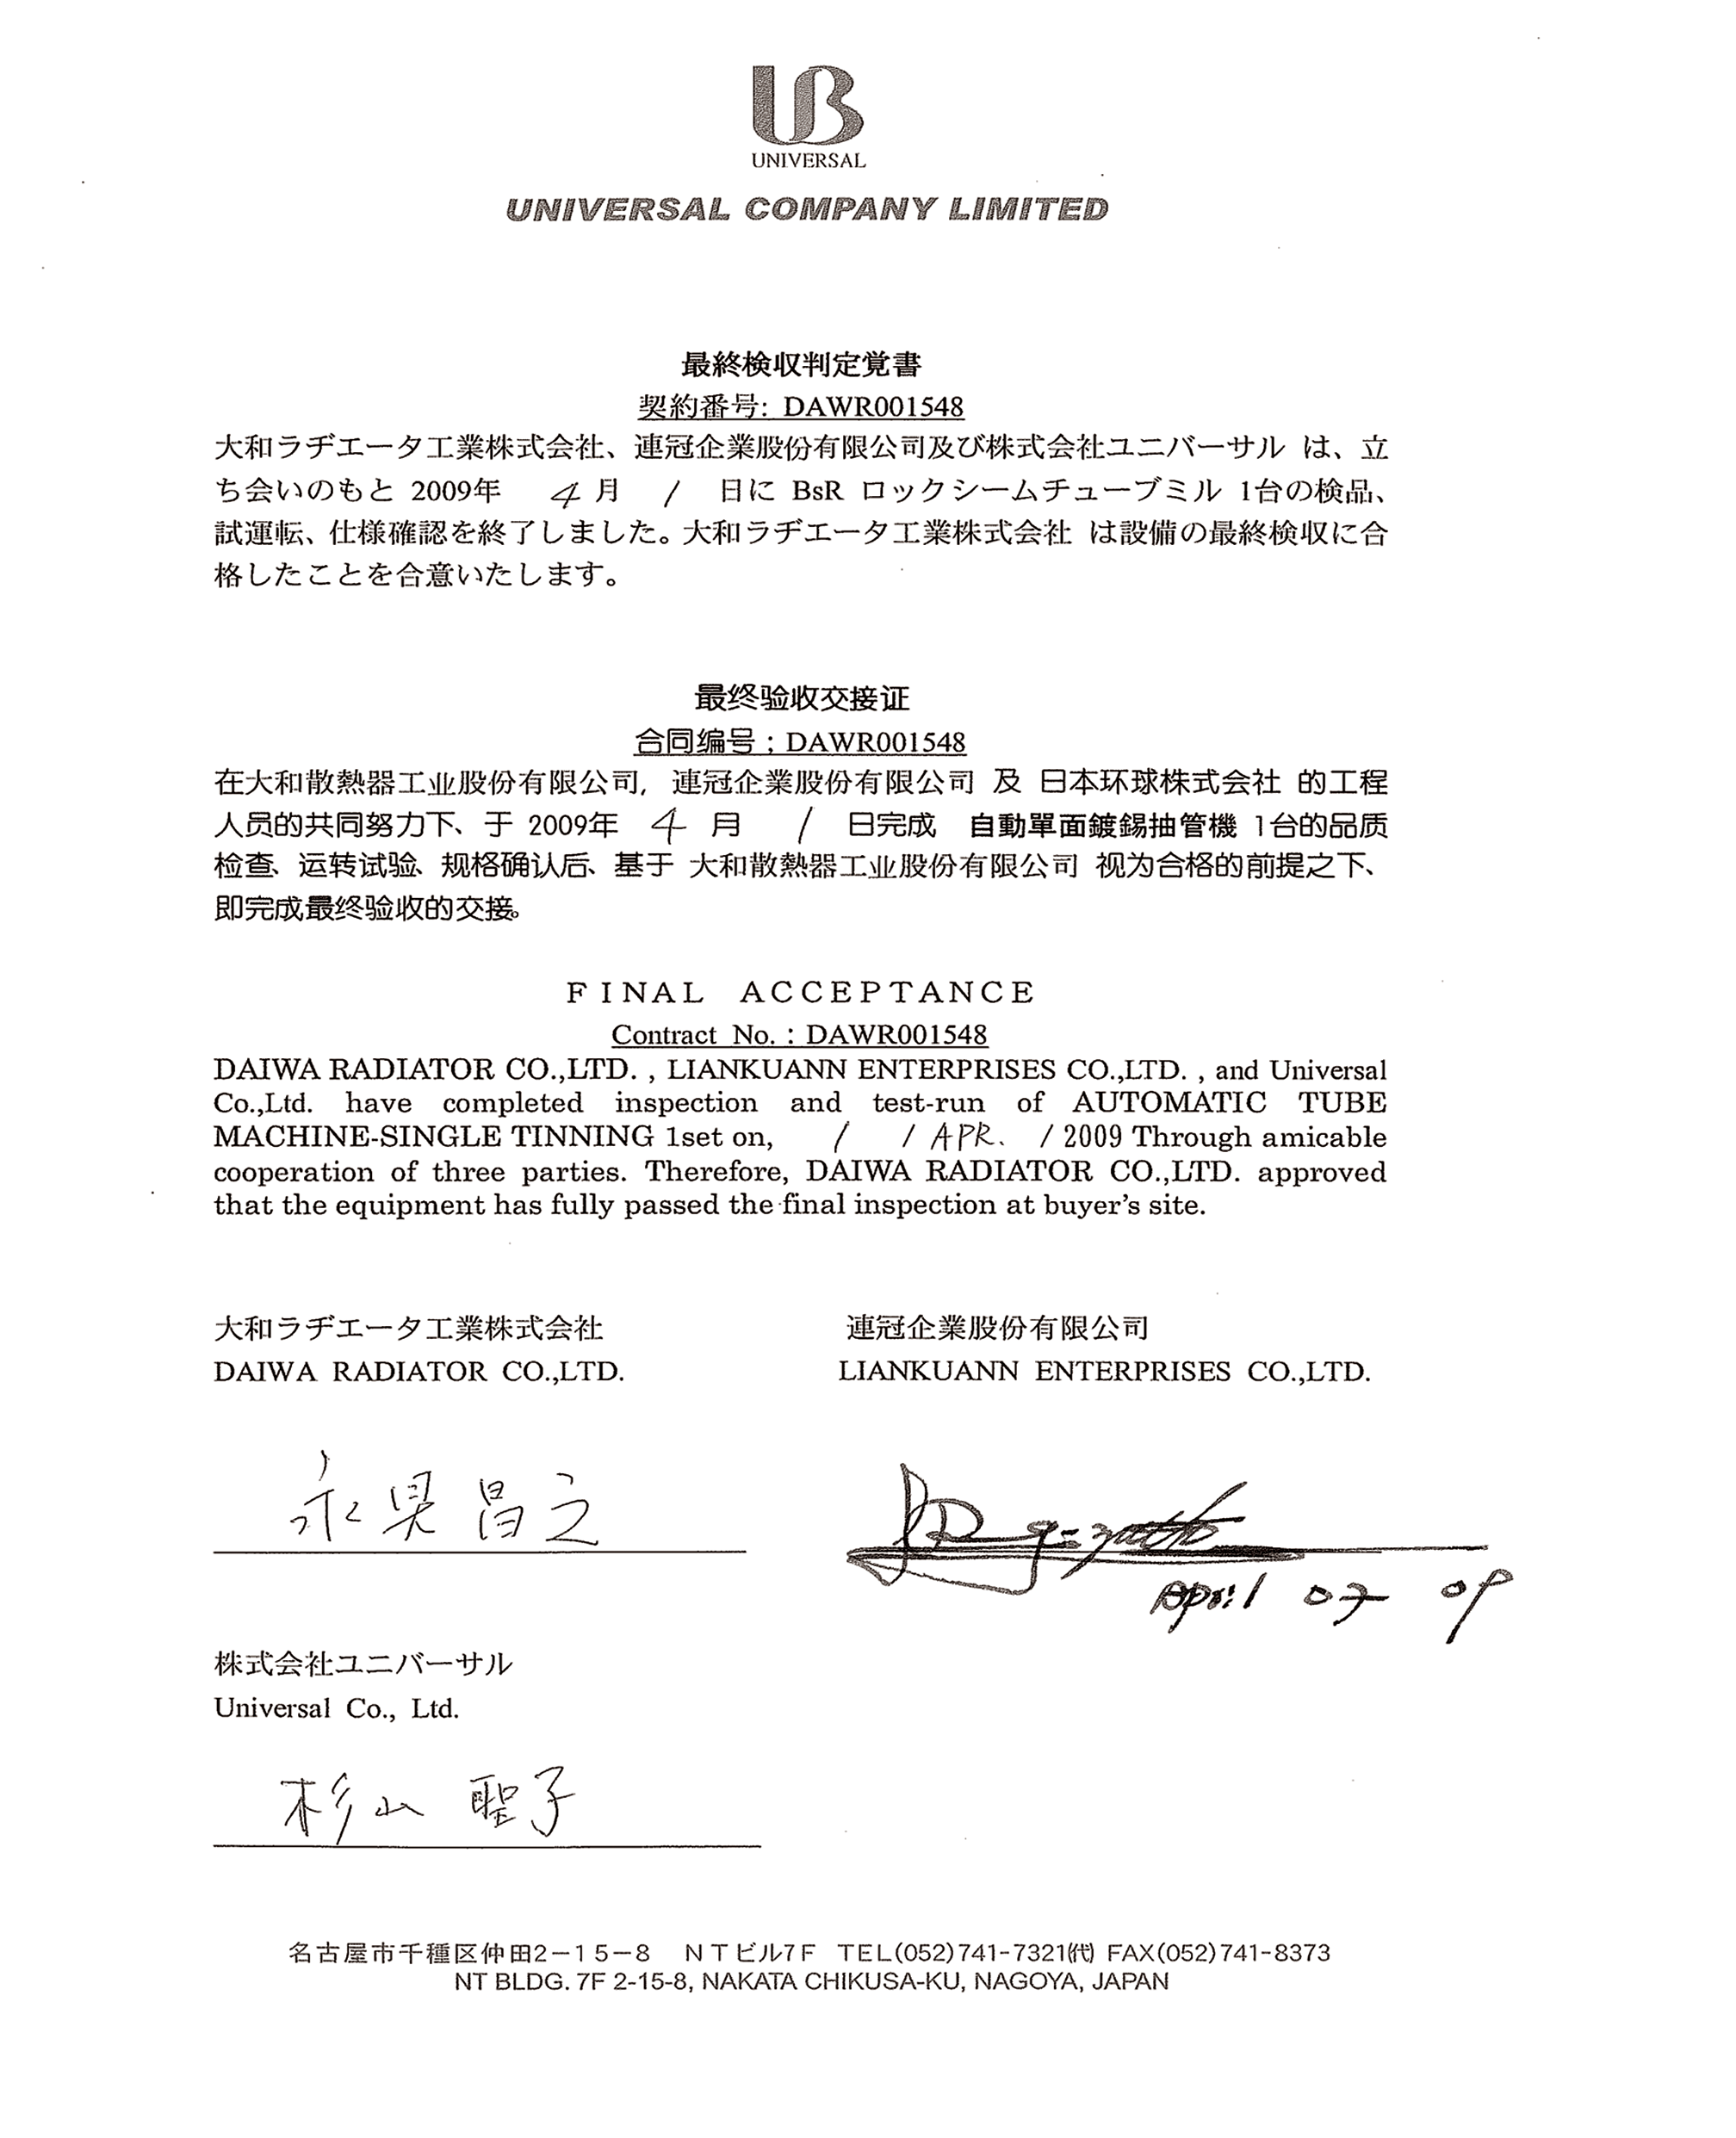 Certificate of satisfation de Japan